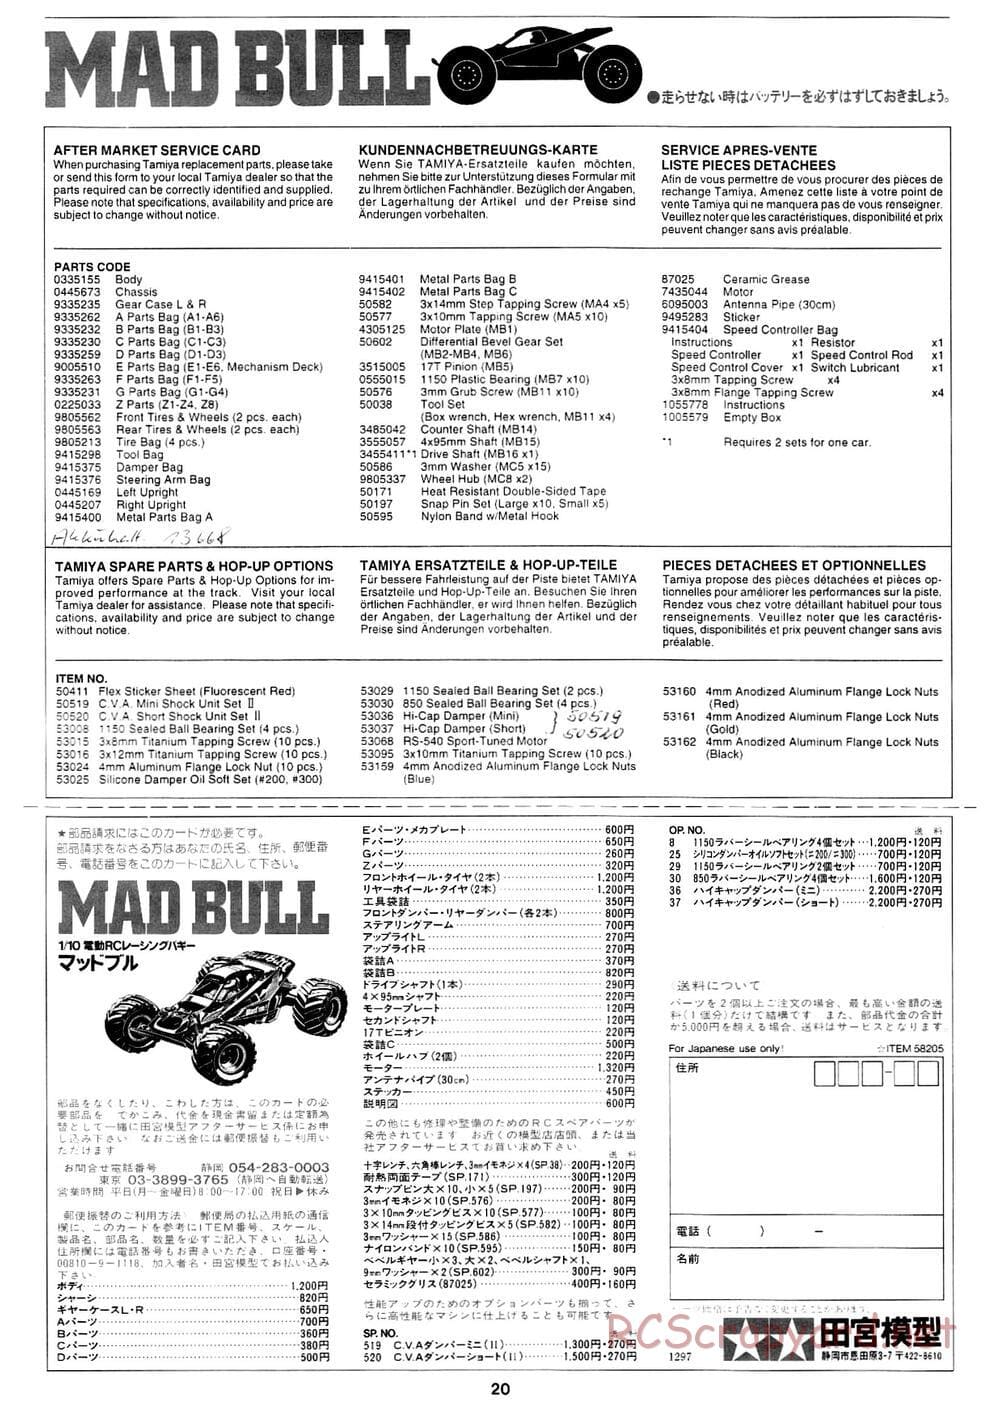 Tamiya - Mad Bull Chassis - Manual - Page 20